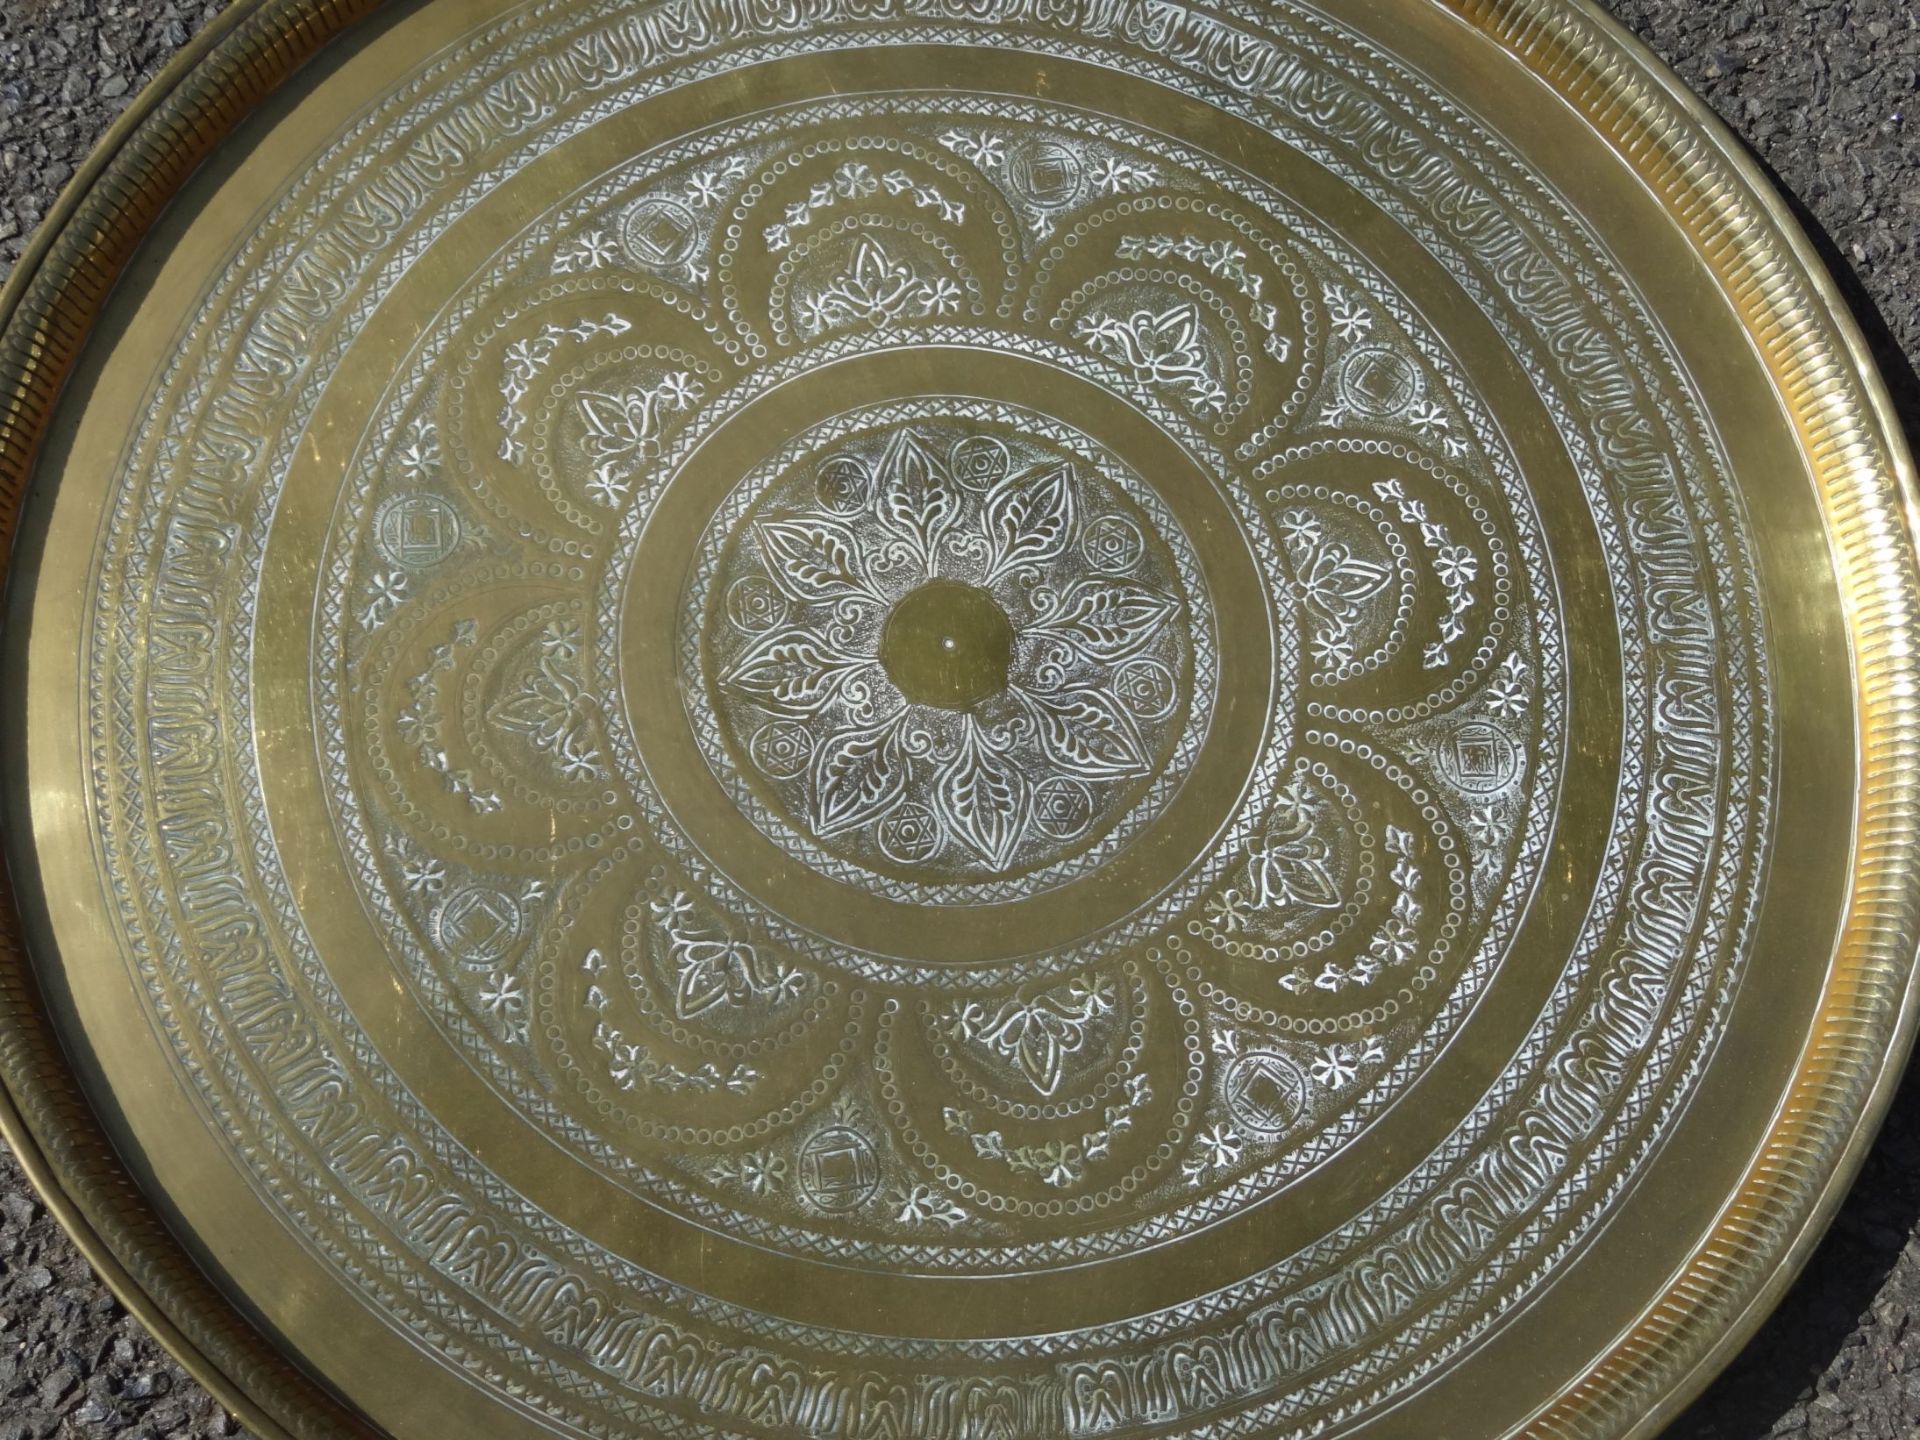 grosses massives rundes Tablett, Messing, wohl von Beduinentischchen, D-58 cm - Bild 2 aus 3